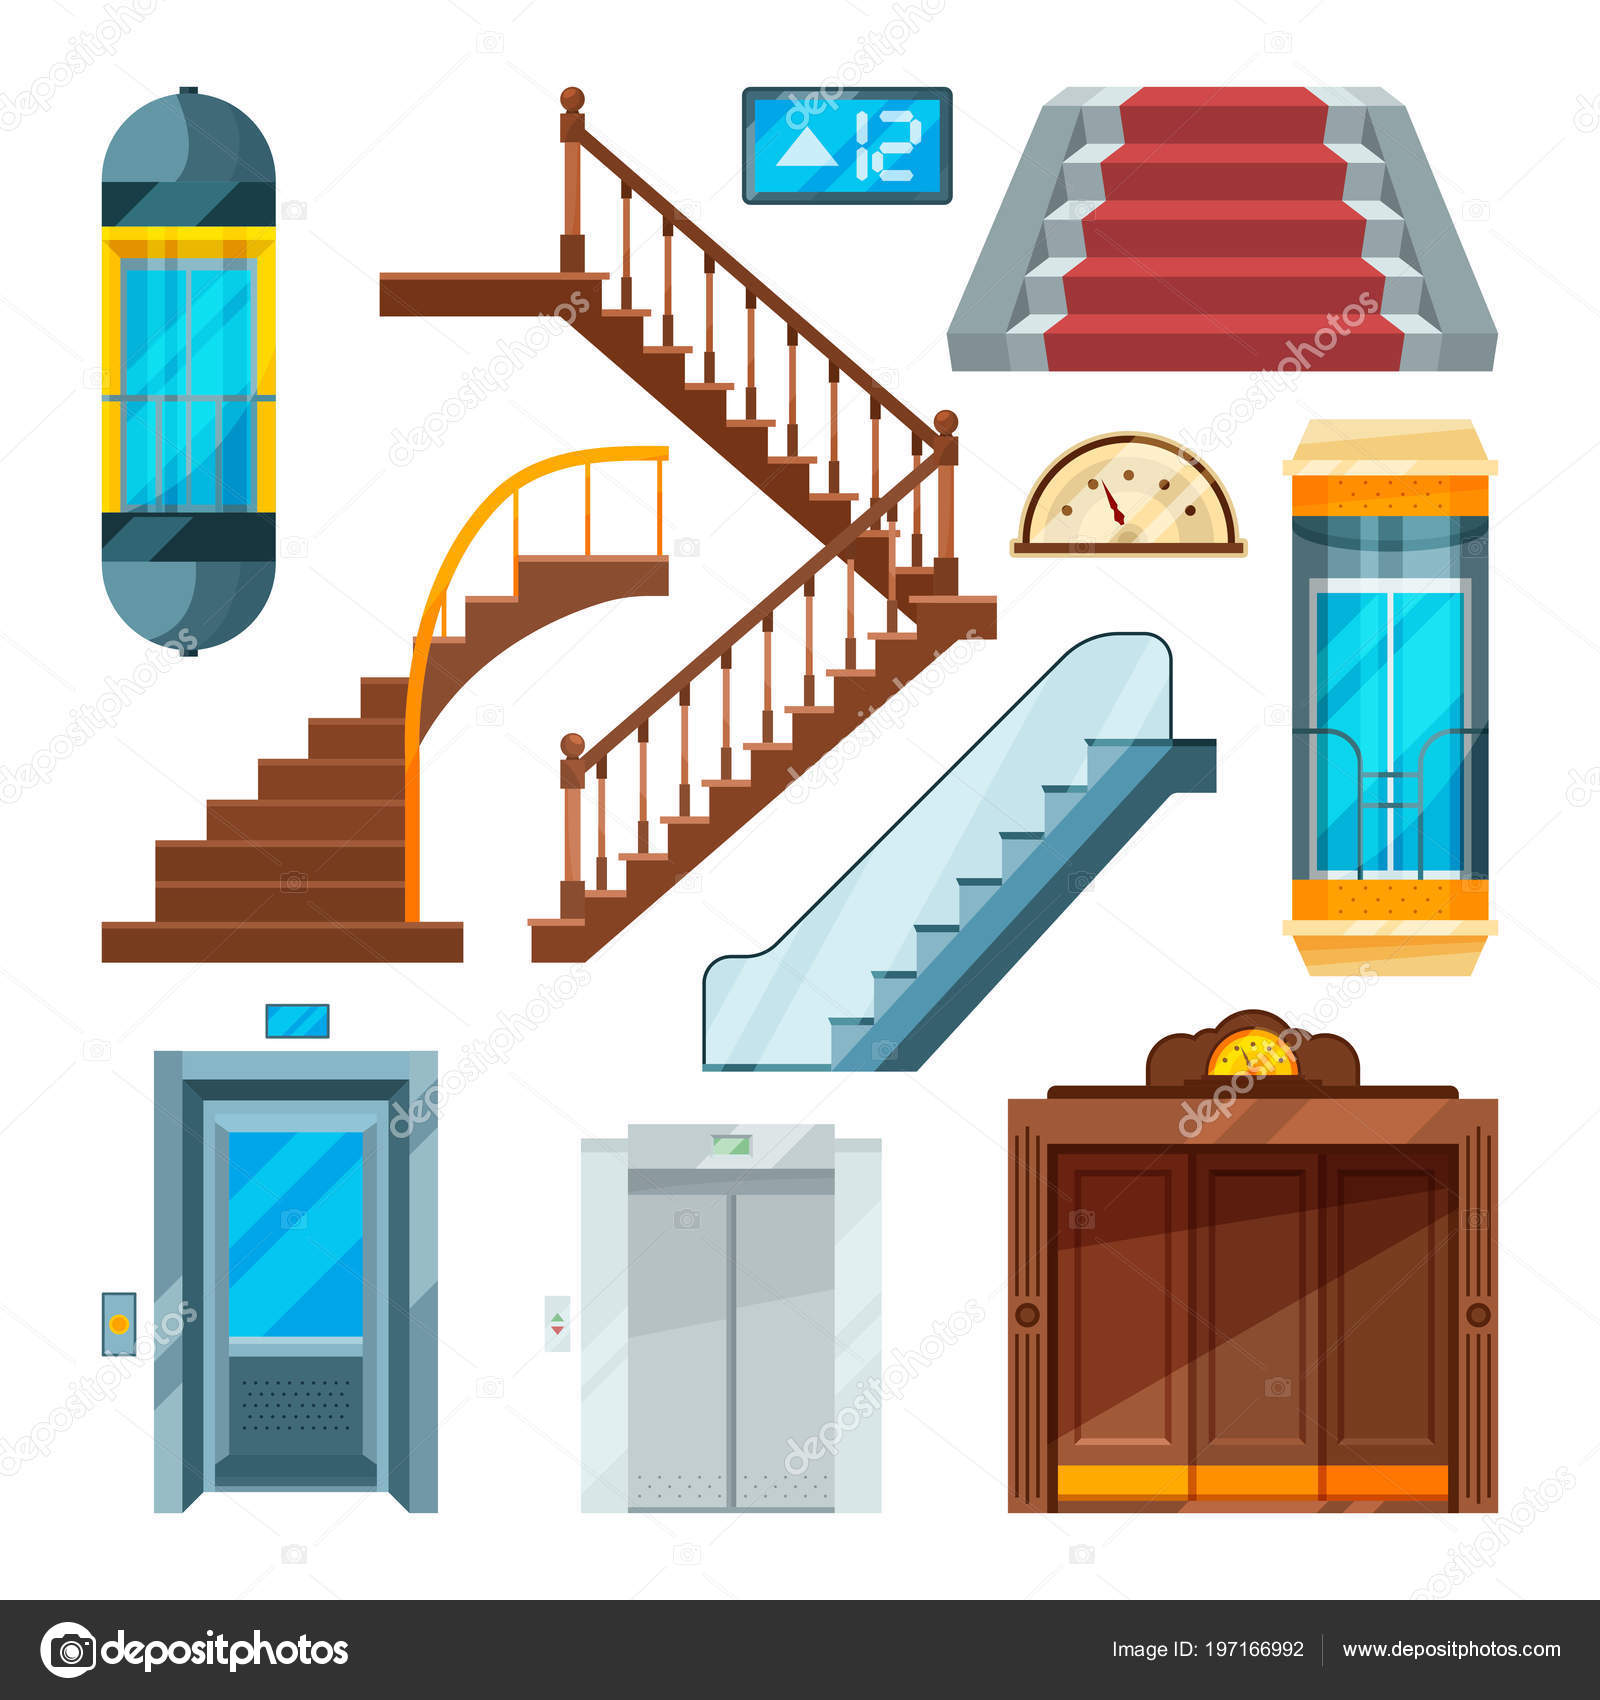 Ascensores y escaleras en diferentes estilos. Mecanismos de elevación